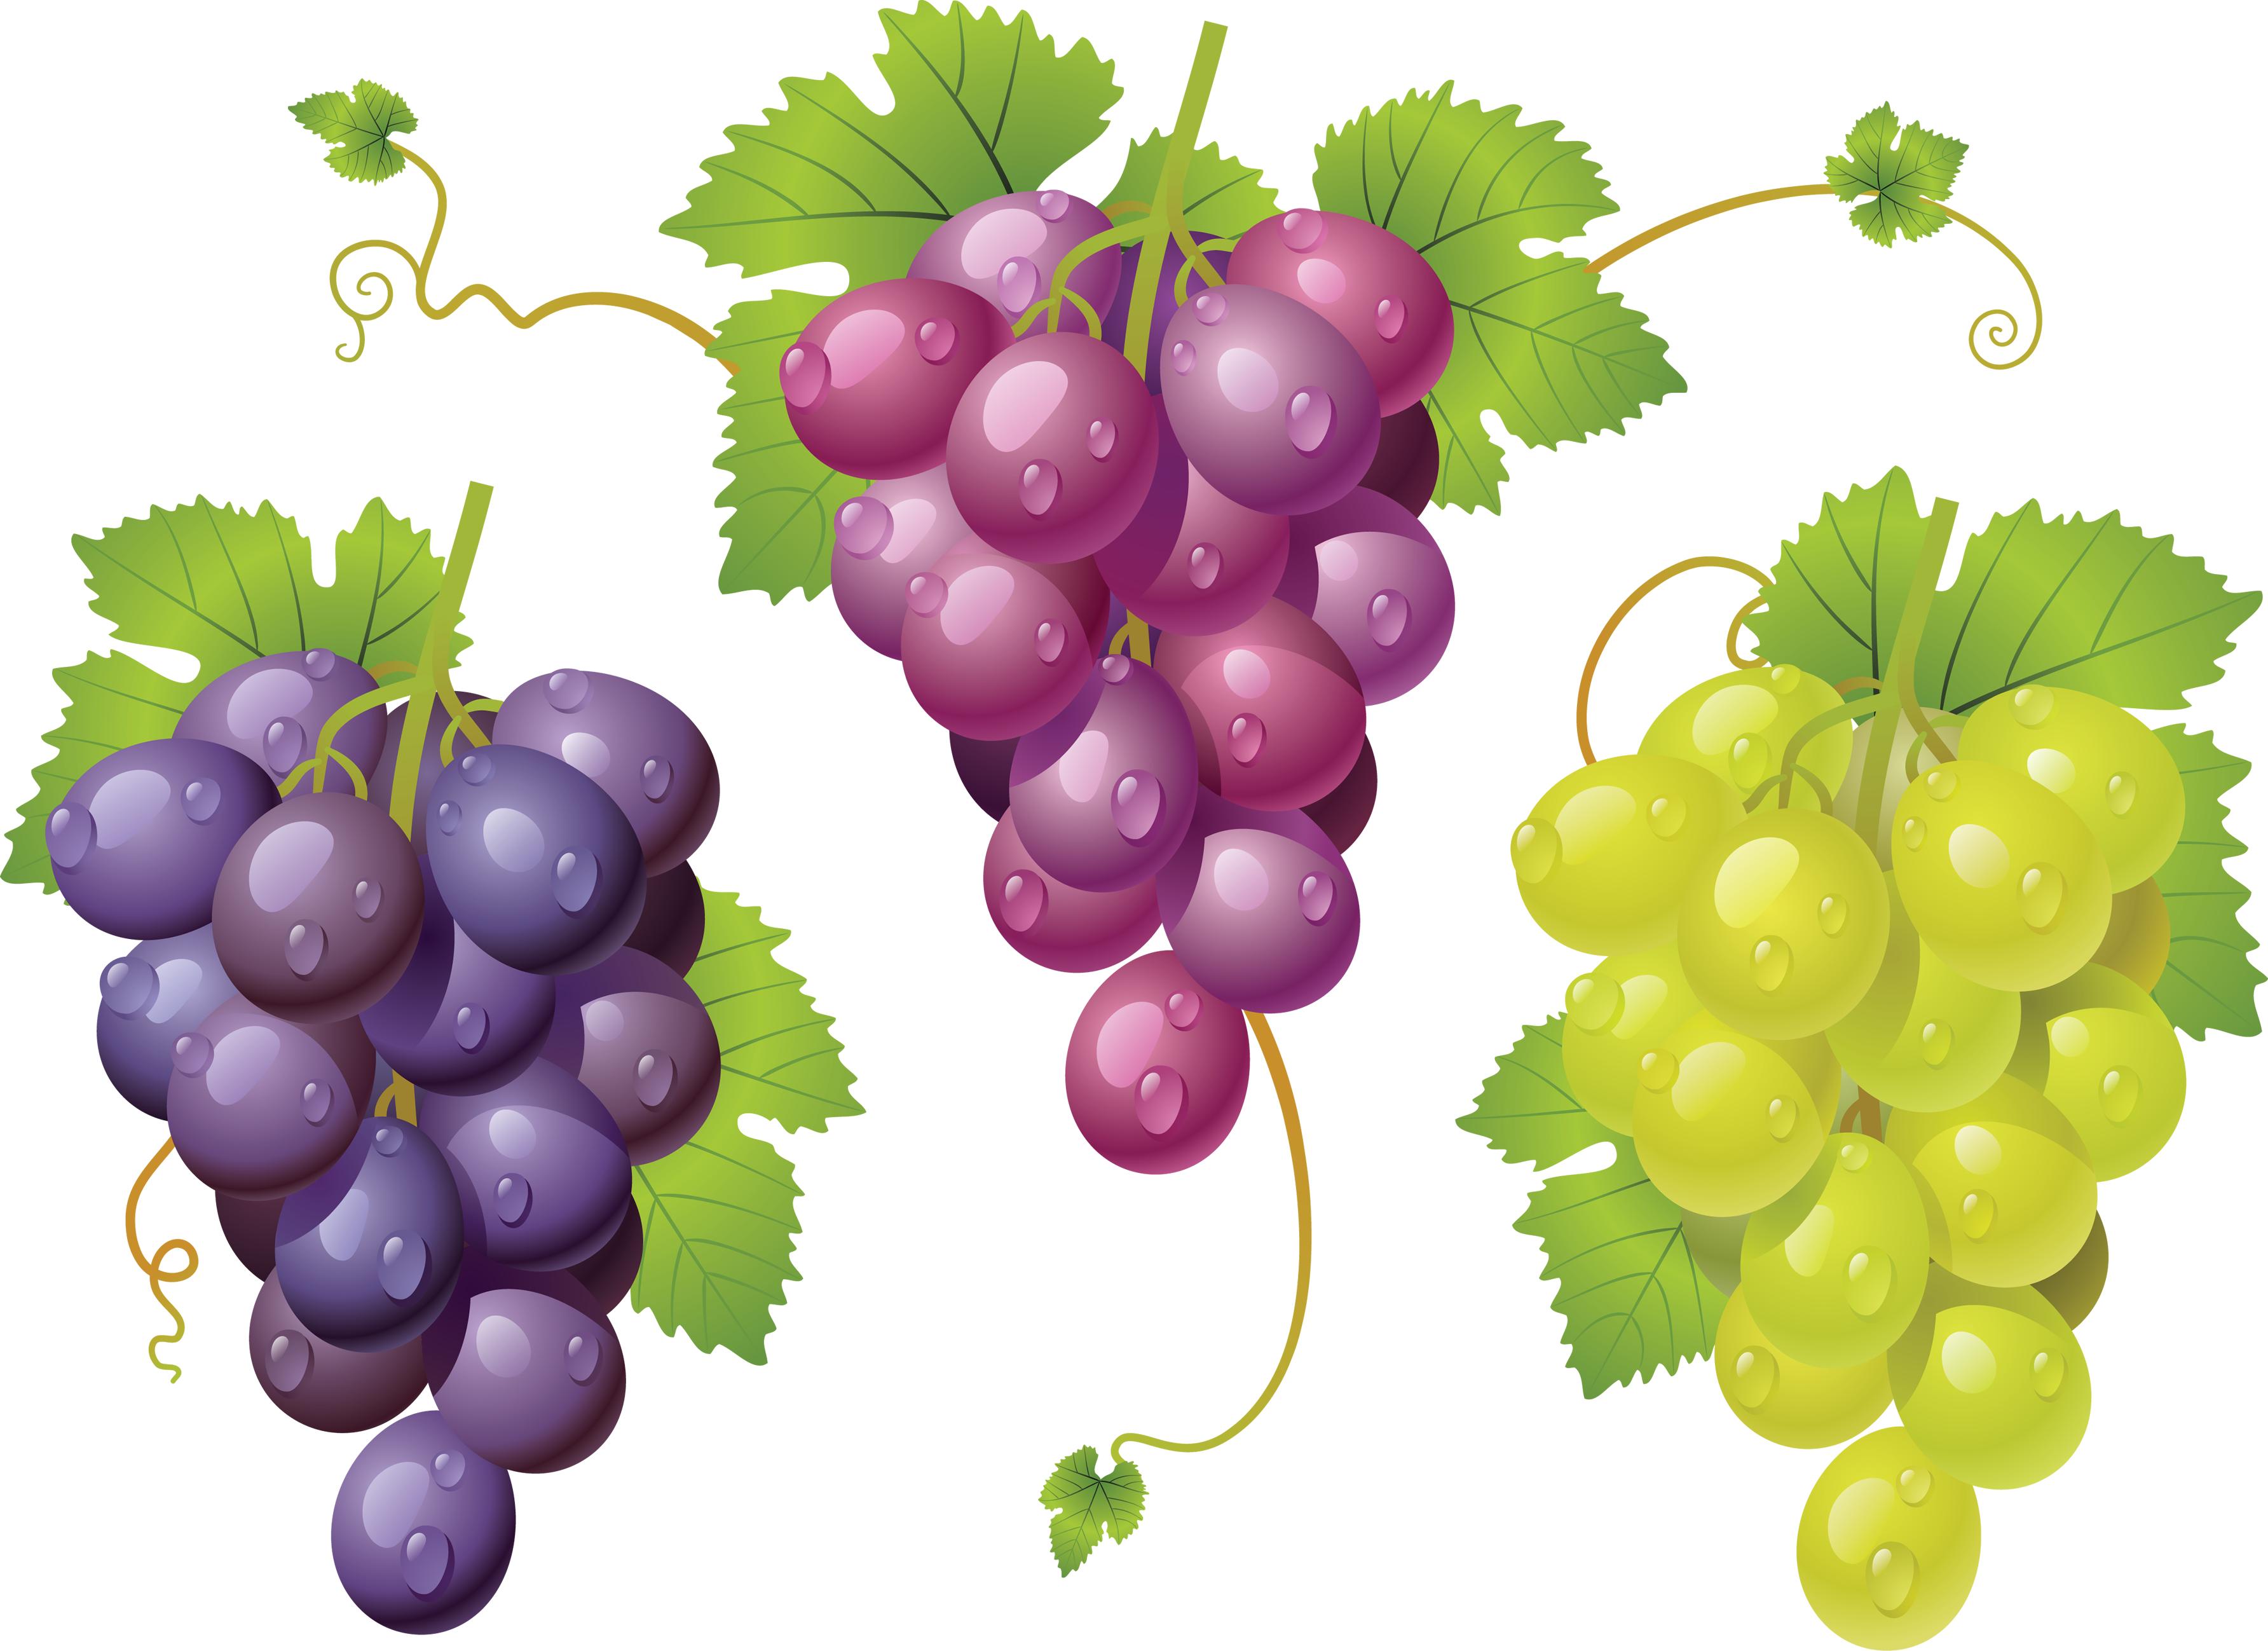 Grapes Images, Modafinilsale - La Cura De La Uva/ The Grape Cure (3568x2597)